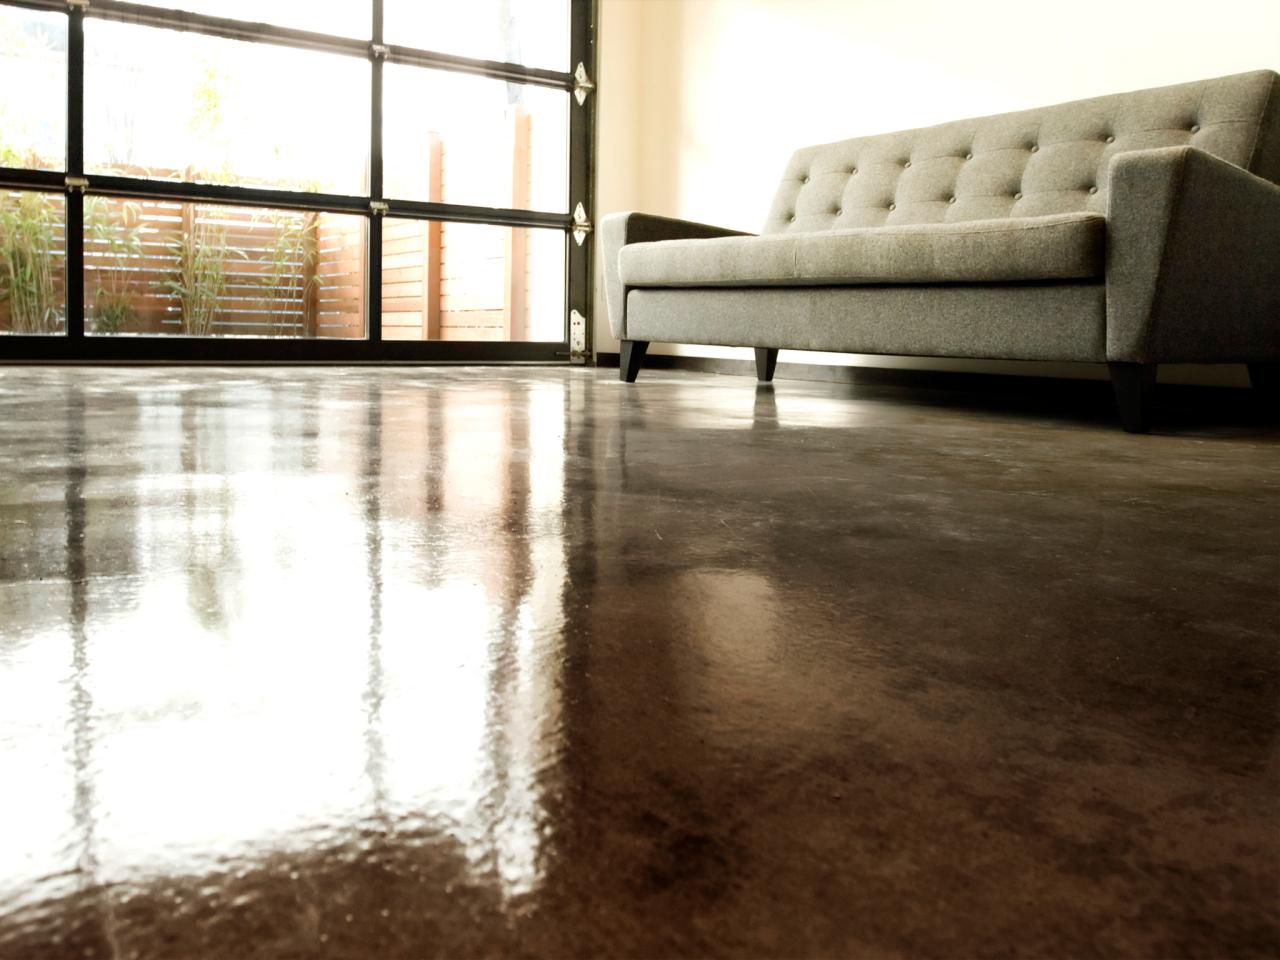 concrete stain acid flooring apply floor diy floors paint dye indoor walls skim coat creative wood hgtv wade works spaces